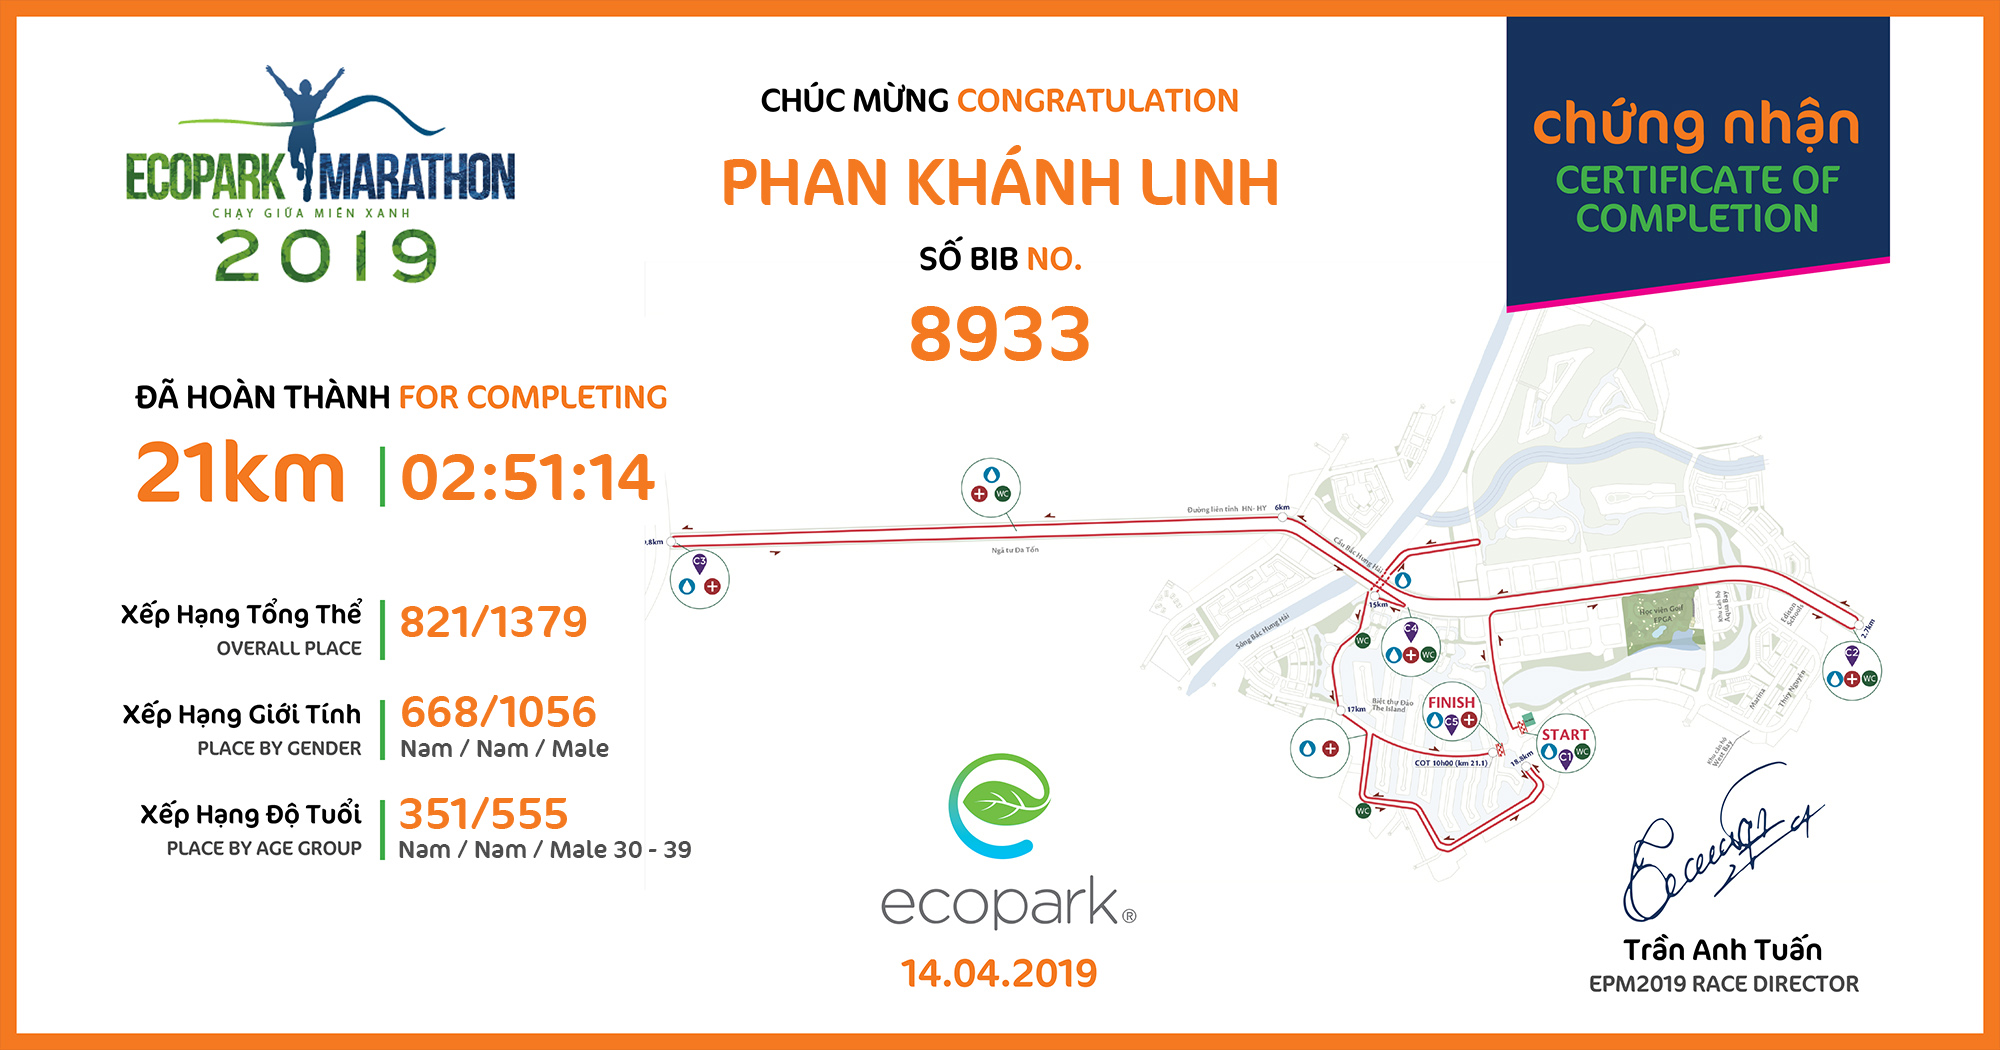 8933 - Phan Khánh Linh